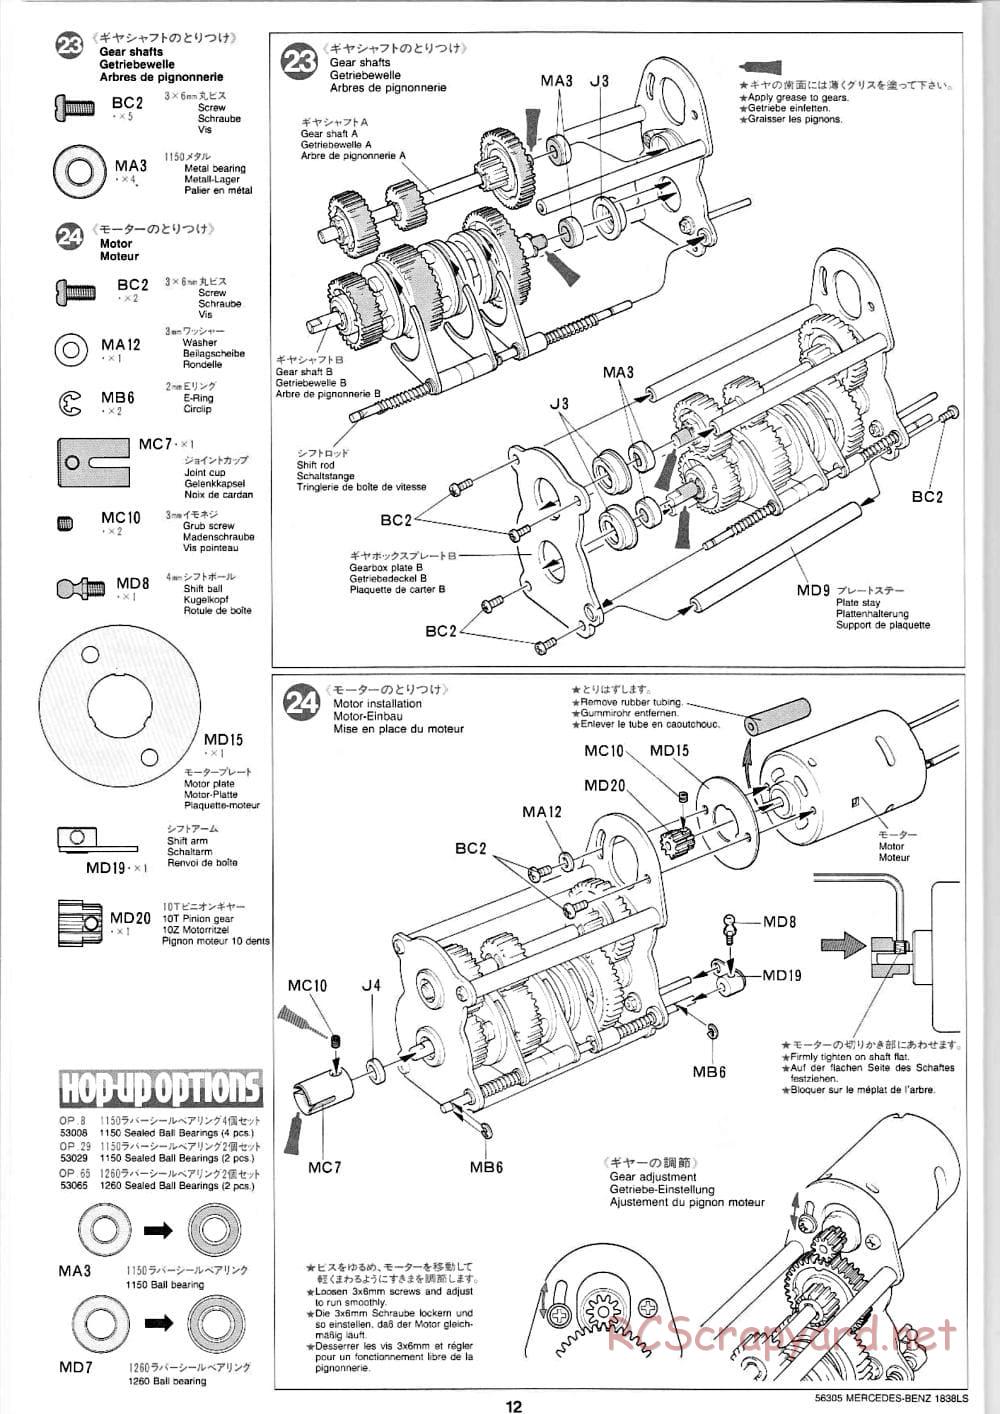 Tamiya - Mercedes-Benz 1838LS - Manual - Page 12